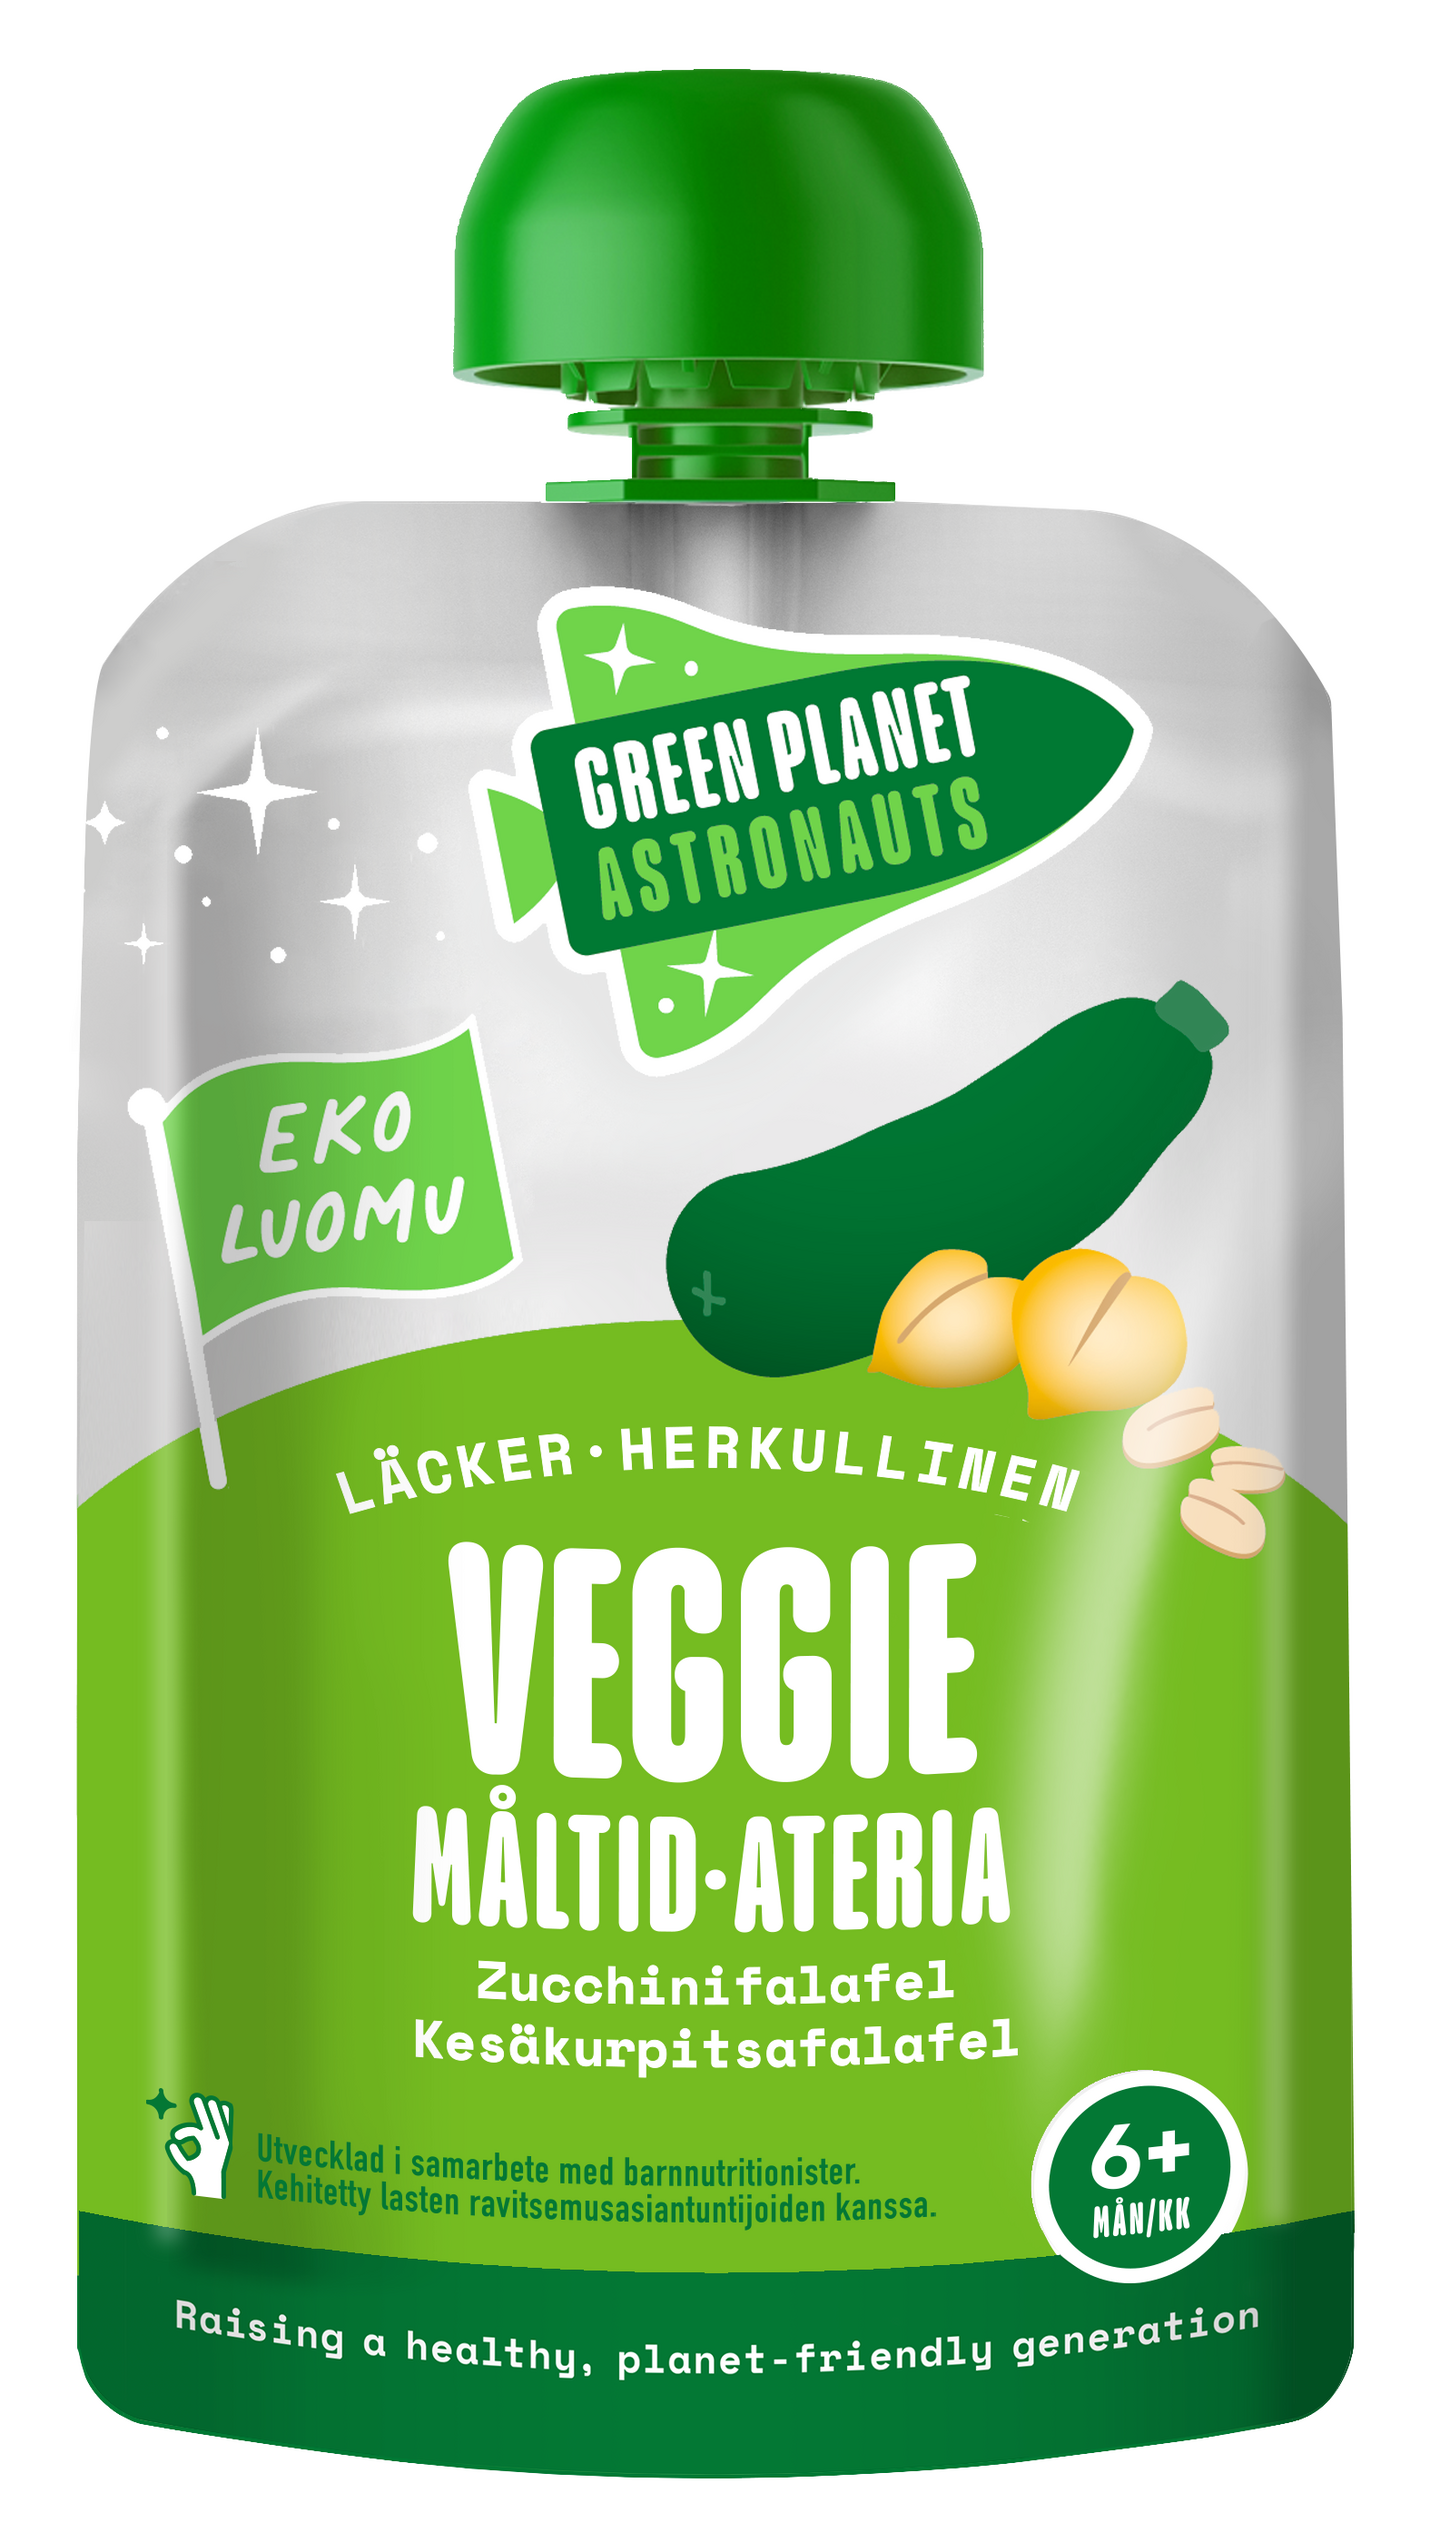 Green Planet Astronauts Luomu Veggie-ateria Kesäkurpitsafalafel 100g 6kk+